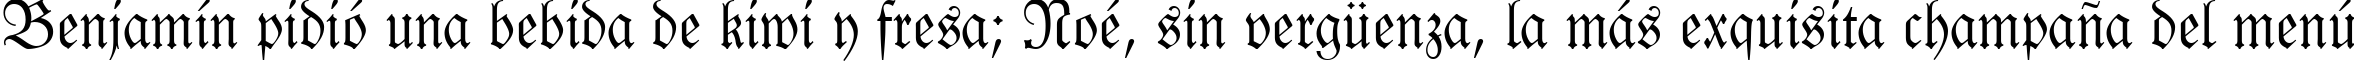 Пример написания шрифтом Fraktur BT текста на испанском